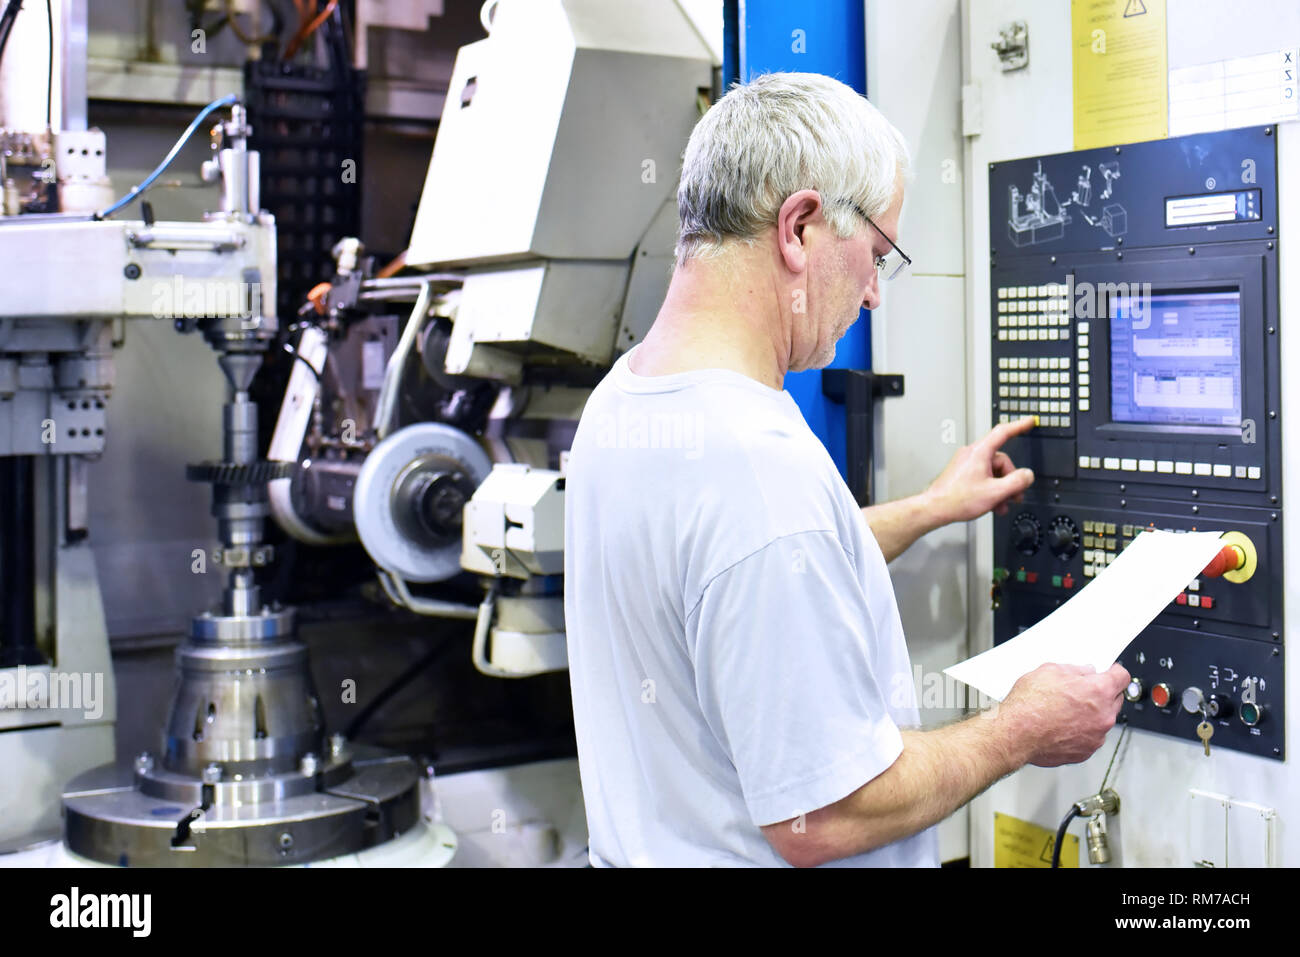 Cnc-Maschine im modernen industriellen Maschinenbau - Arbeitnehmer am Arbeitsplatz Stockfoto